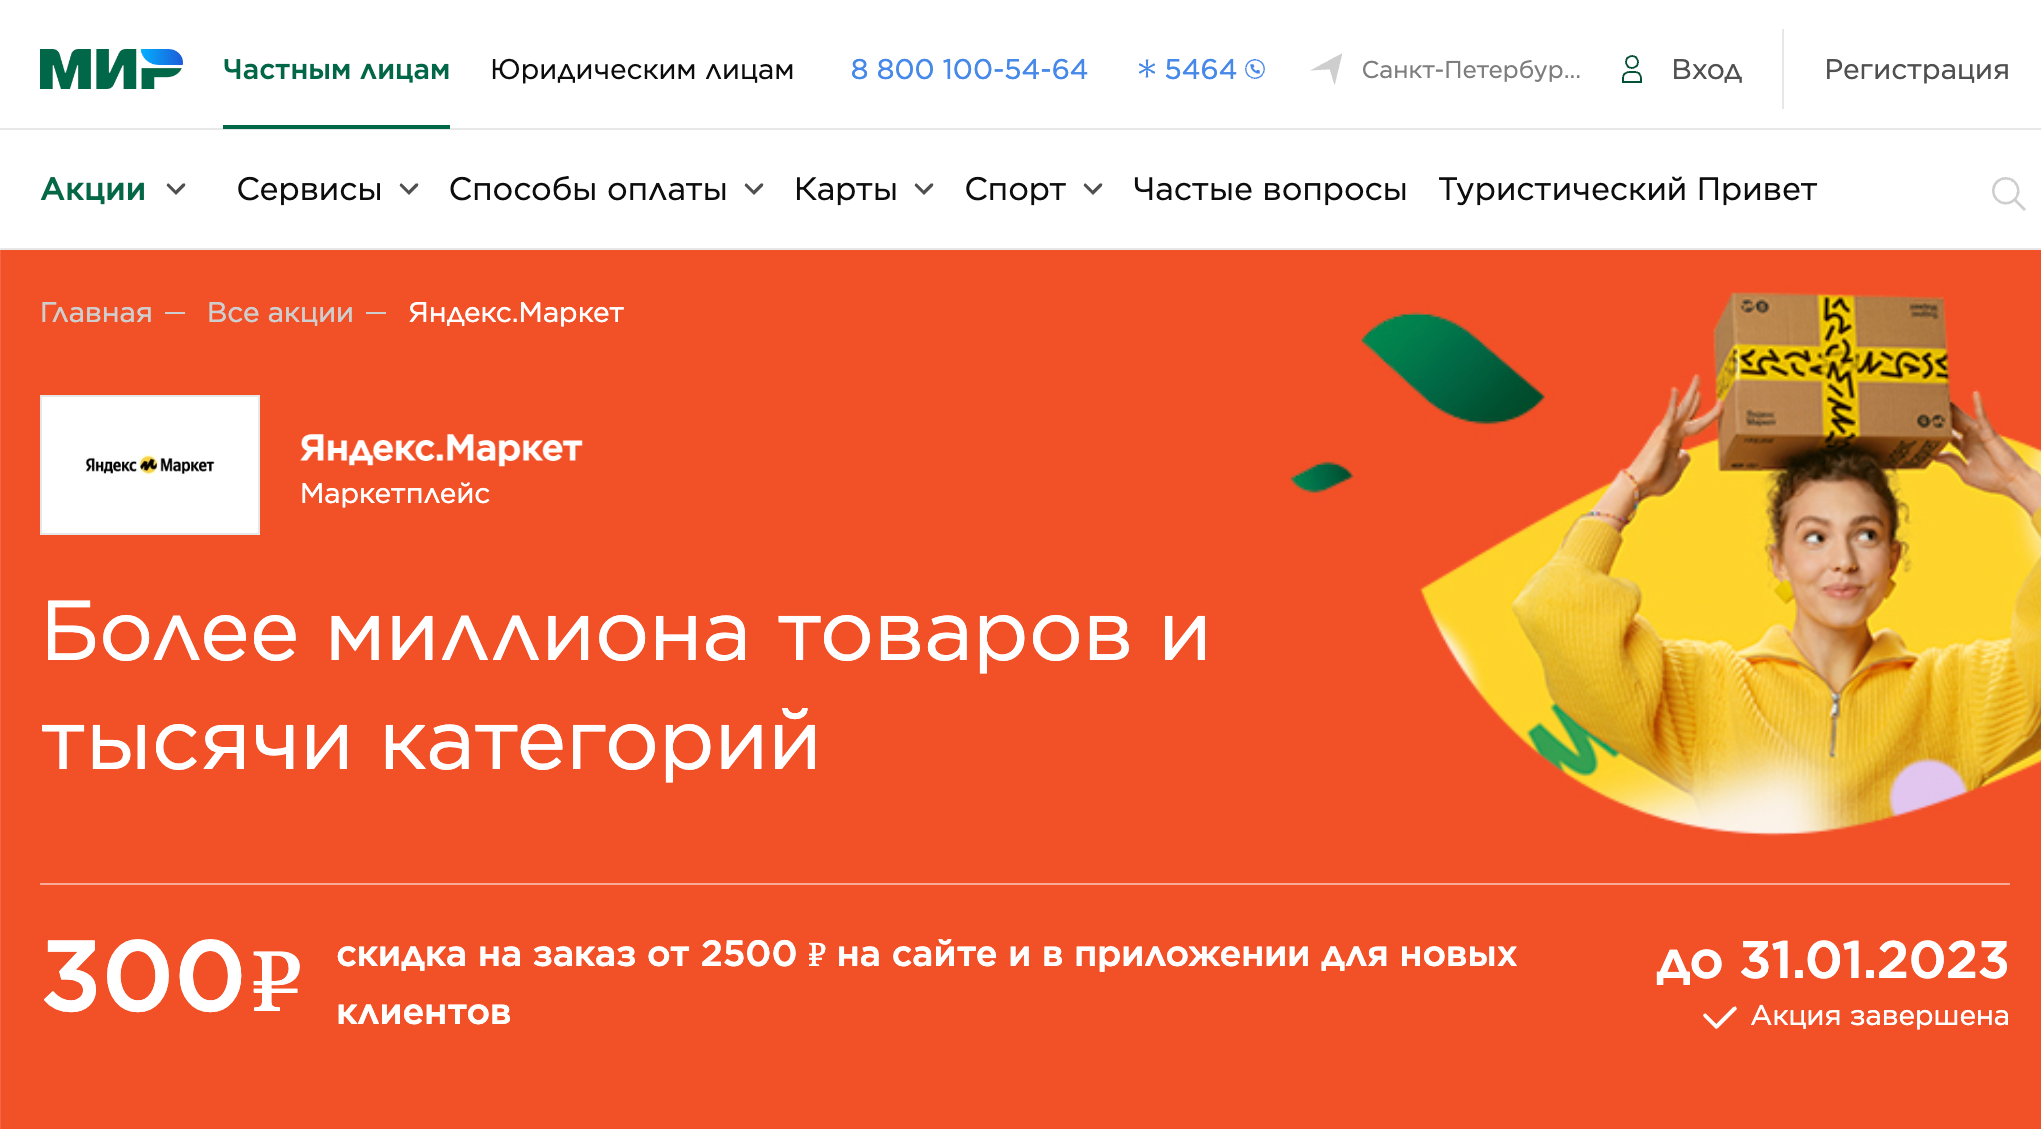 На сайте системы «Мир» можно найти промокоды на скидки в онлайн-магазинах. Источник: privetmir.ru